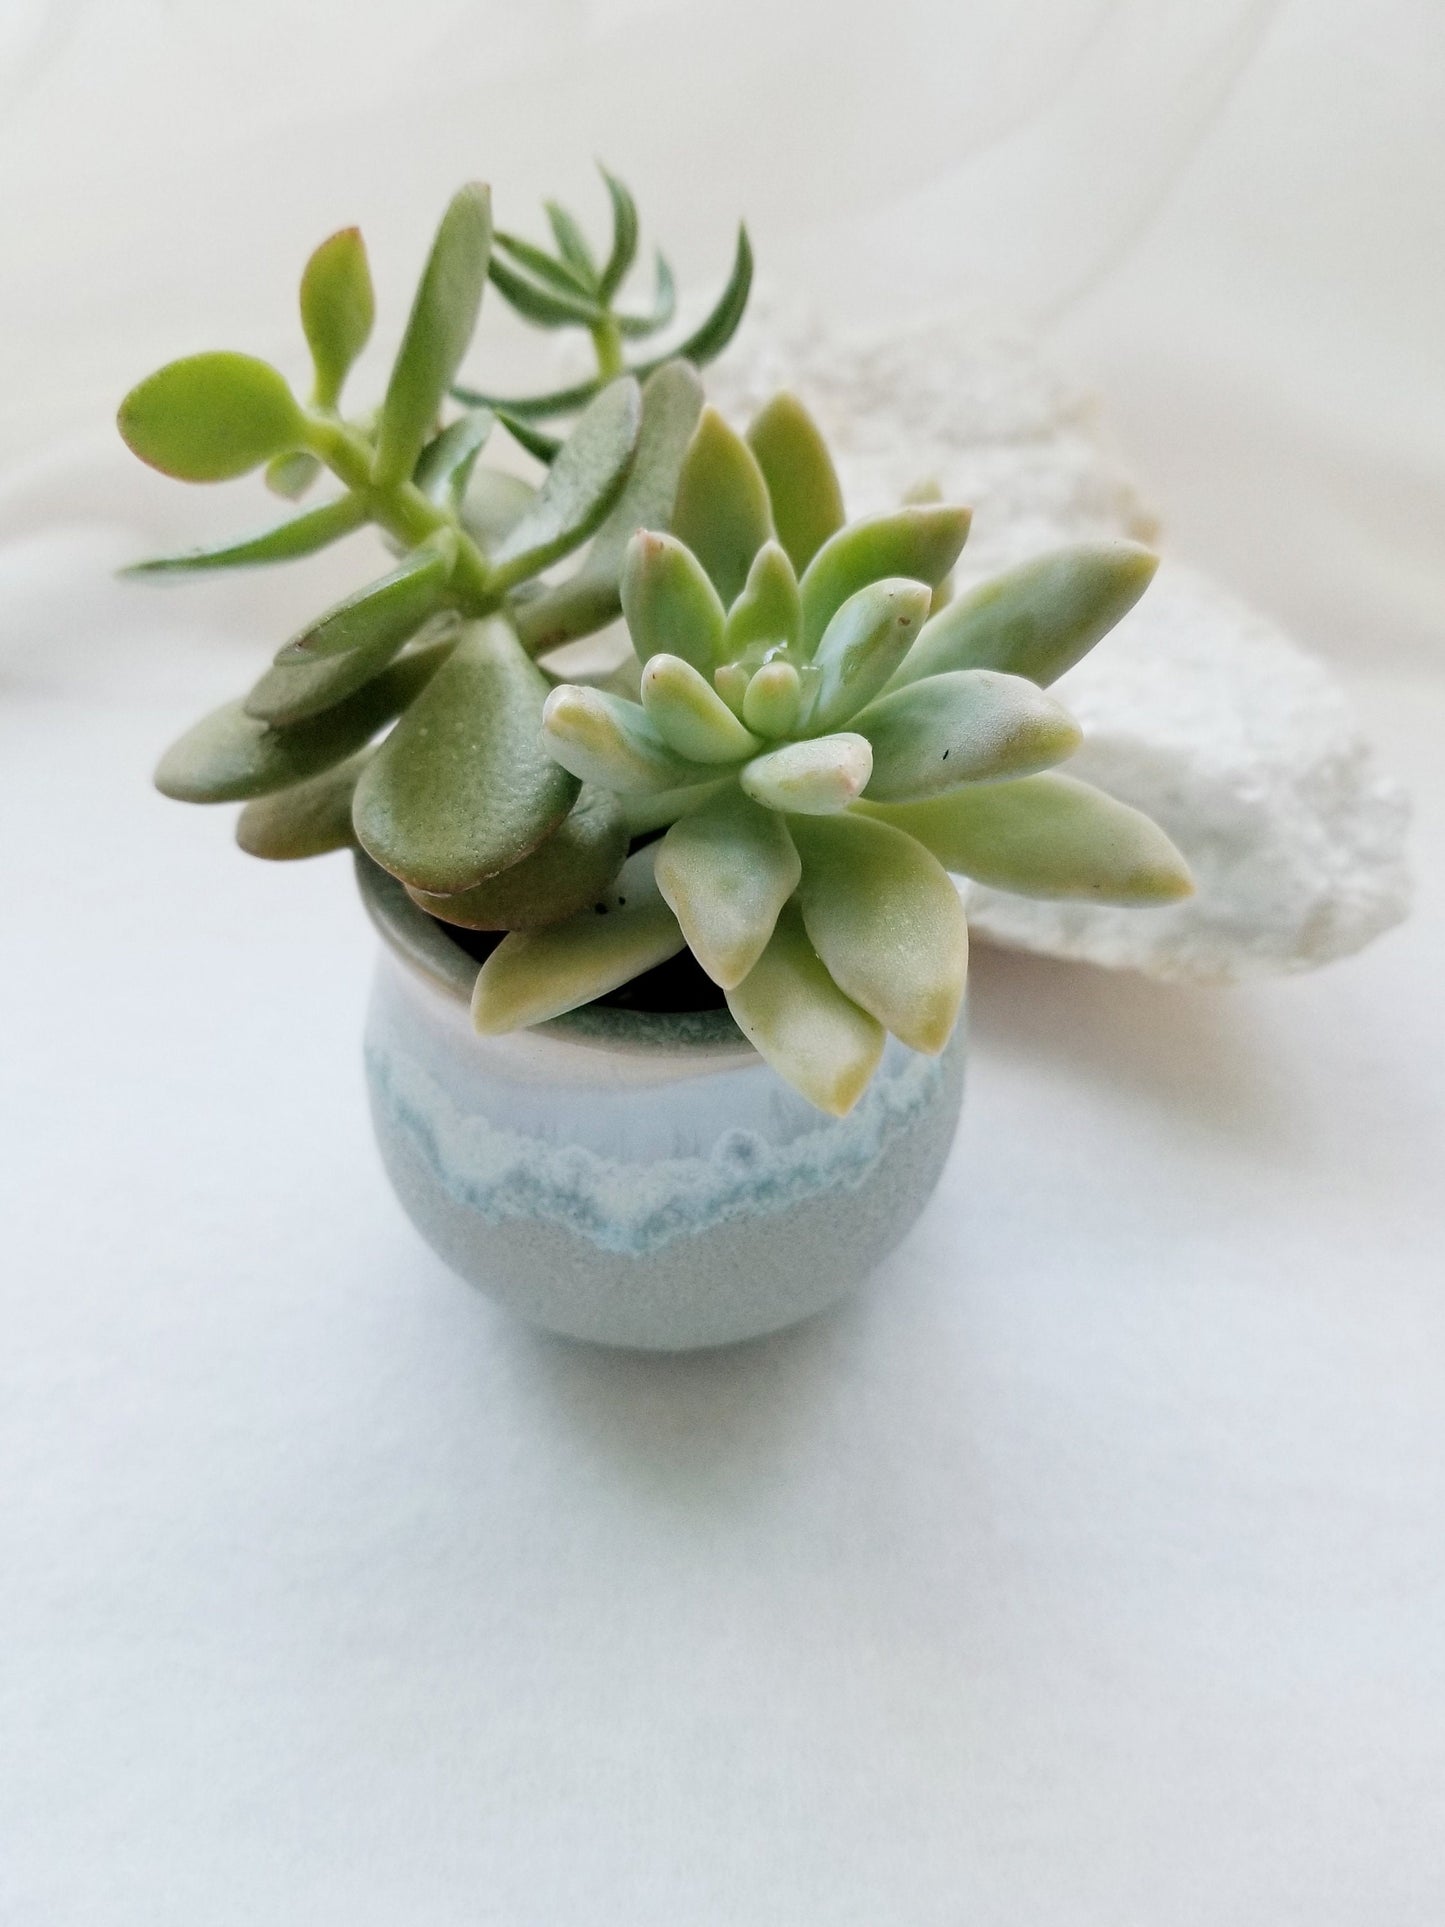 Birthday gift set, mini succulent, 100% natural, spa gift set